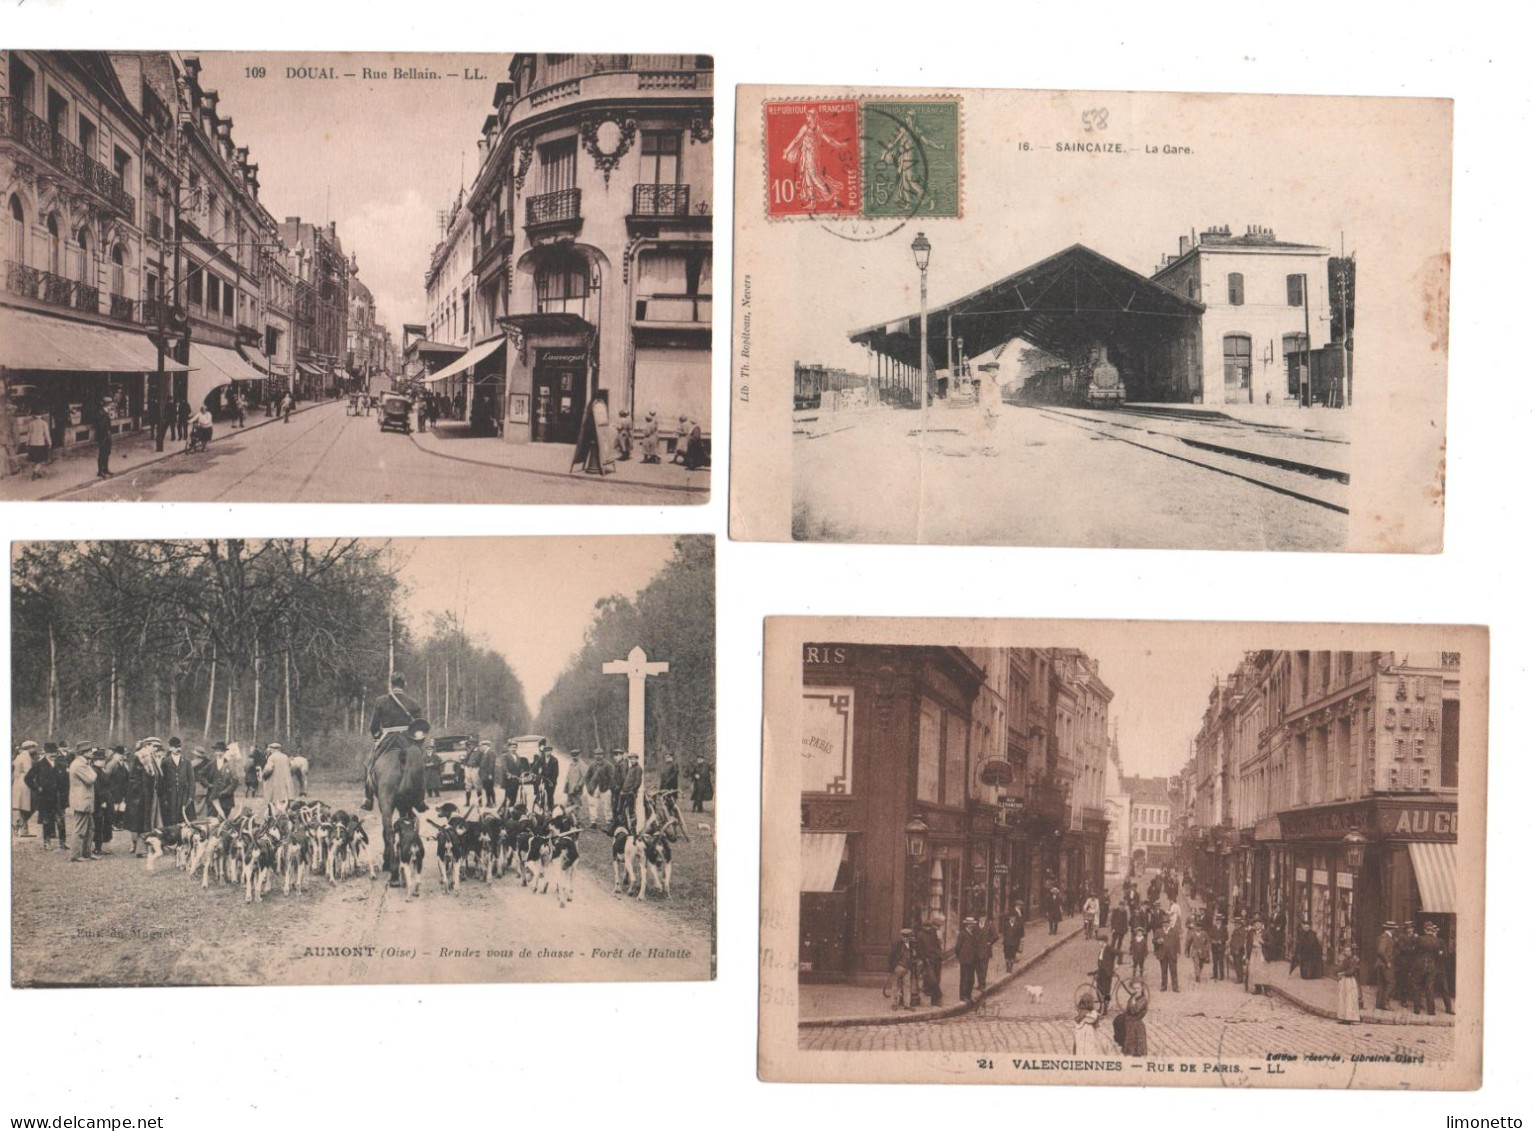 FRANCE-  lot de 99 cartes anciennes, pas de grandes villes ( Paris Lyon Marseille ) bon état général